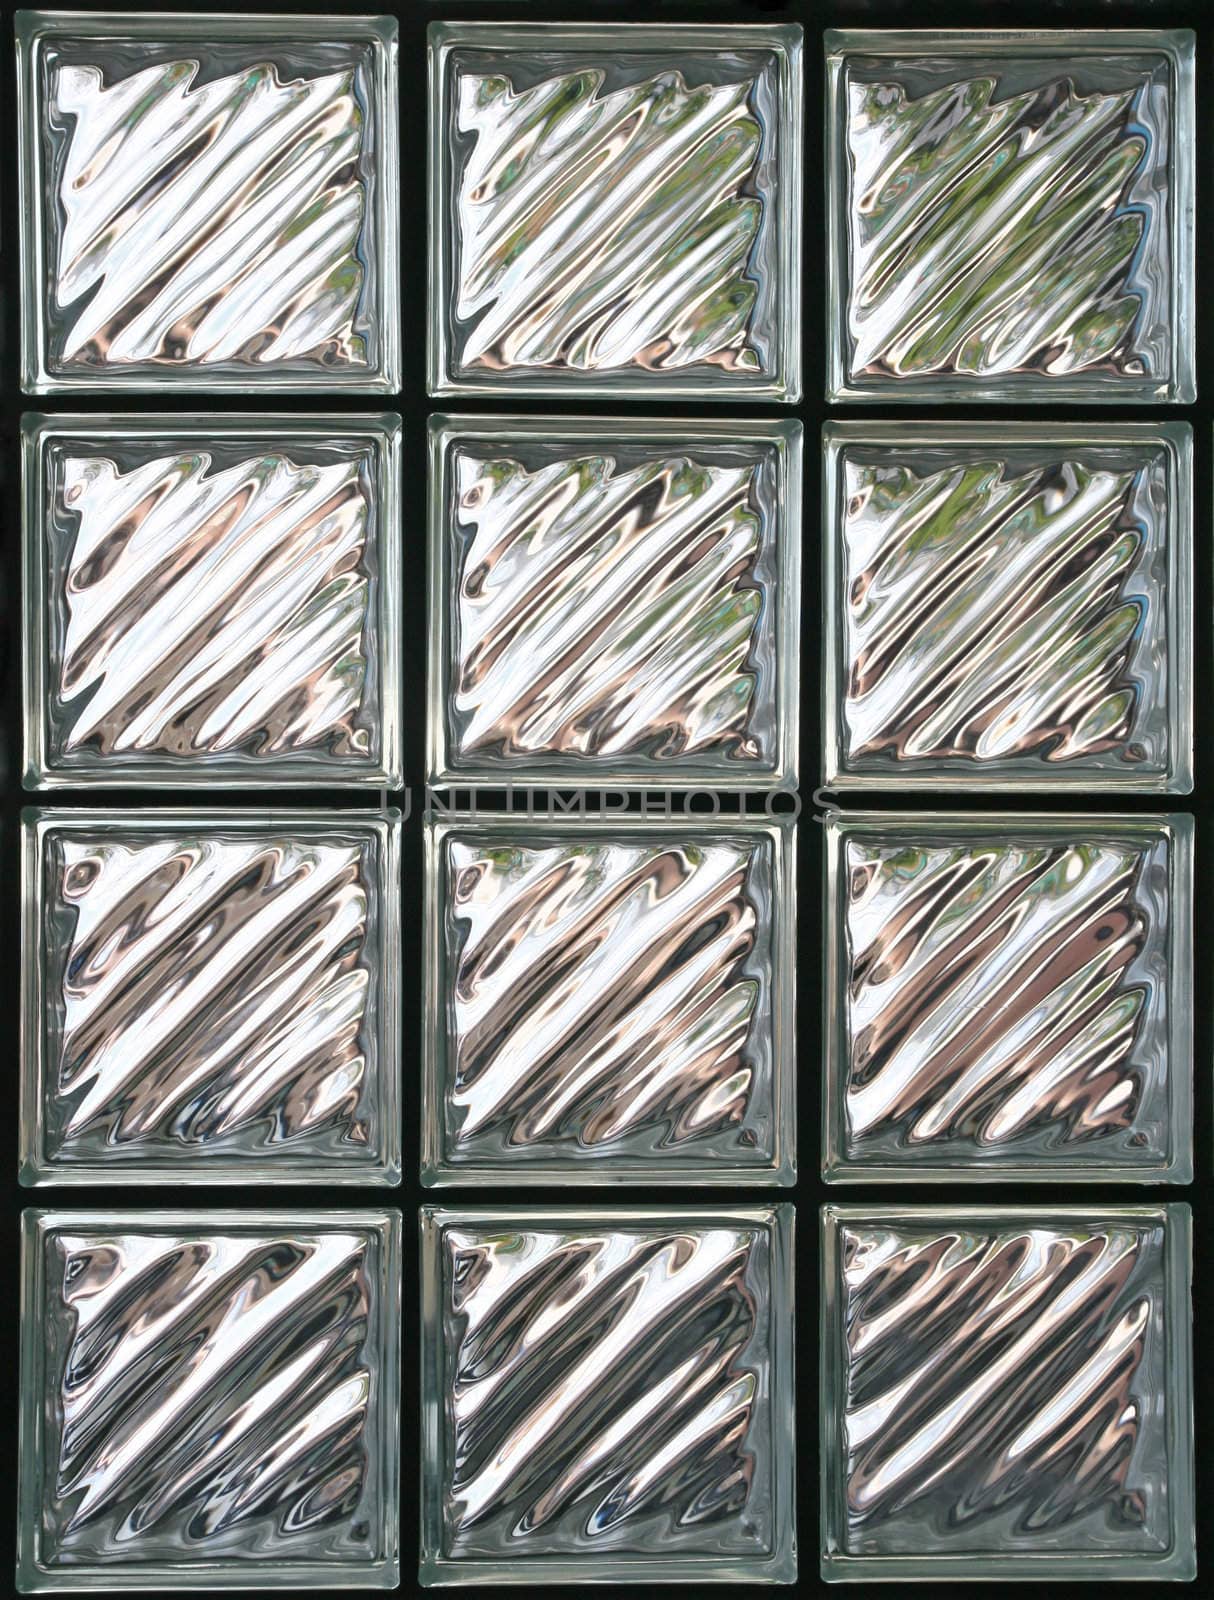 Pattern of Glass Block Wall